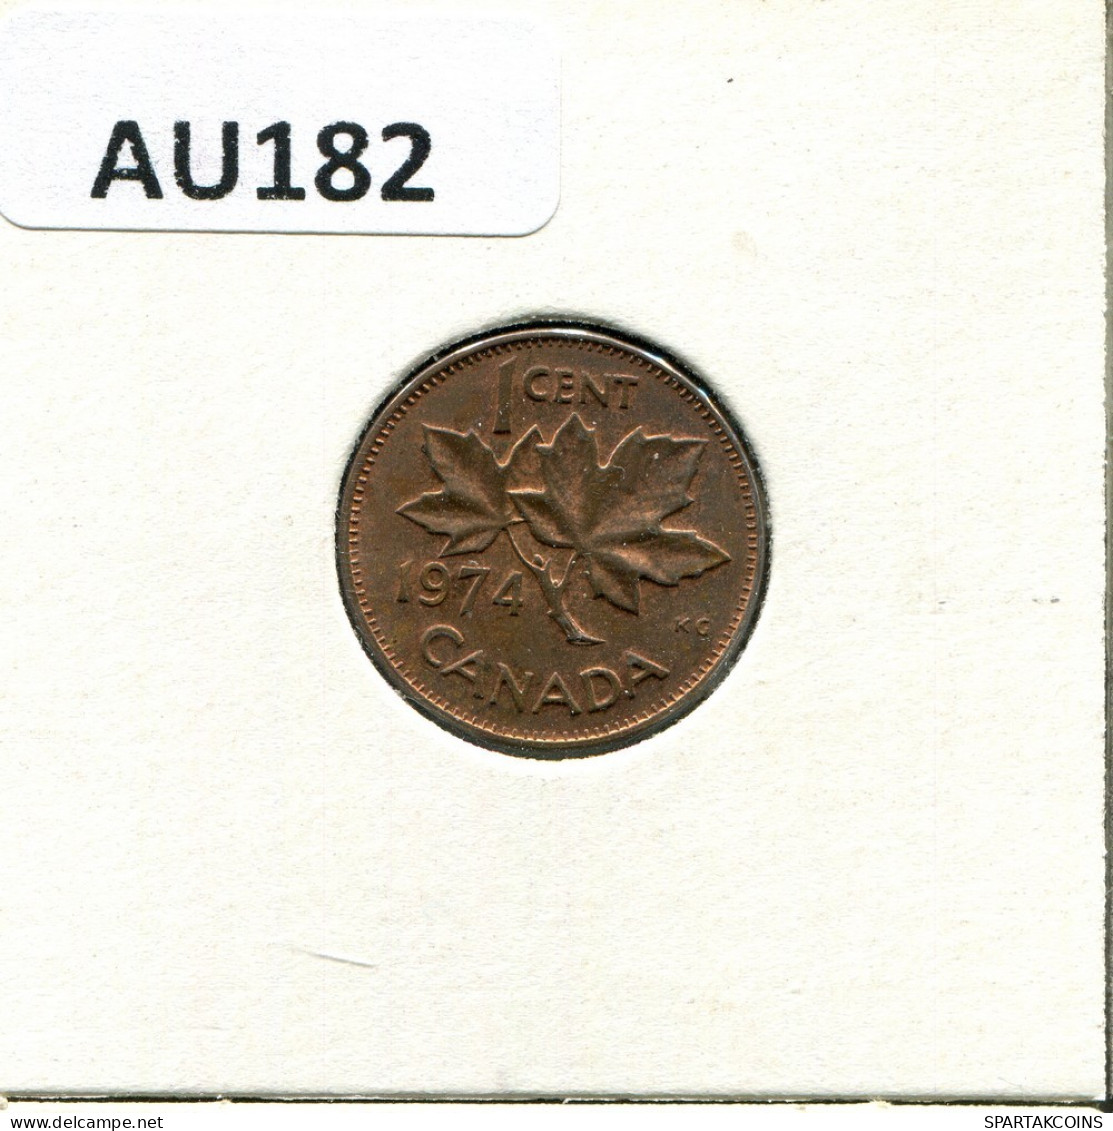 1 CENT 1974 CANADA Coin #AU182.U.A - Canada